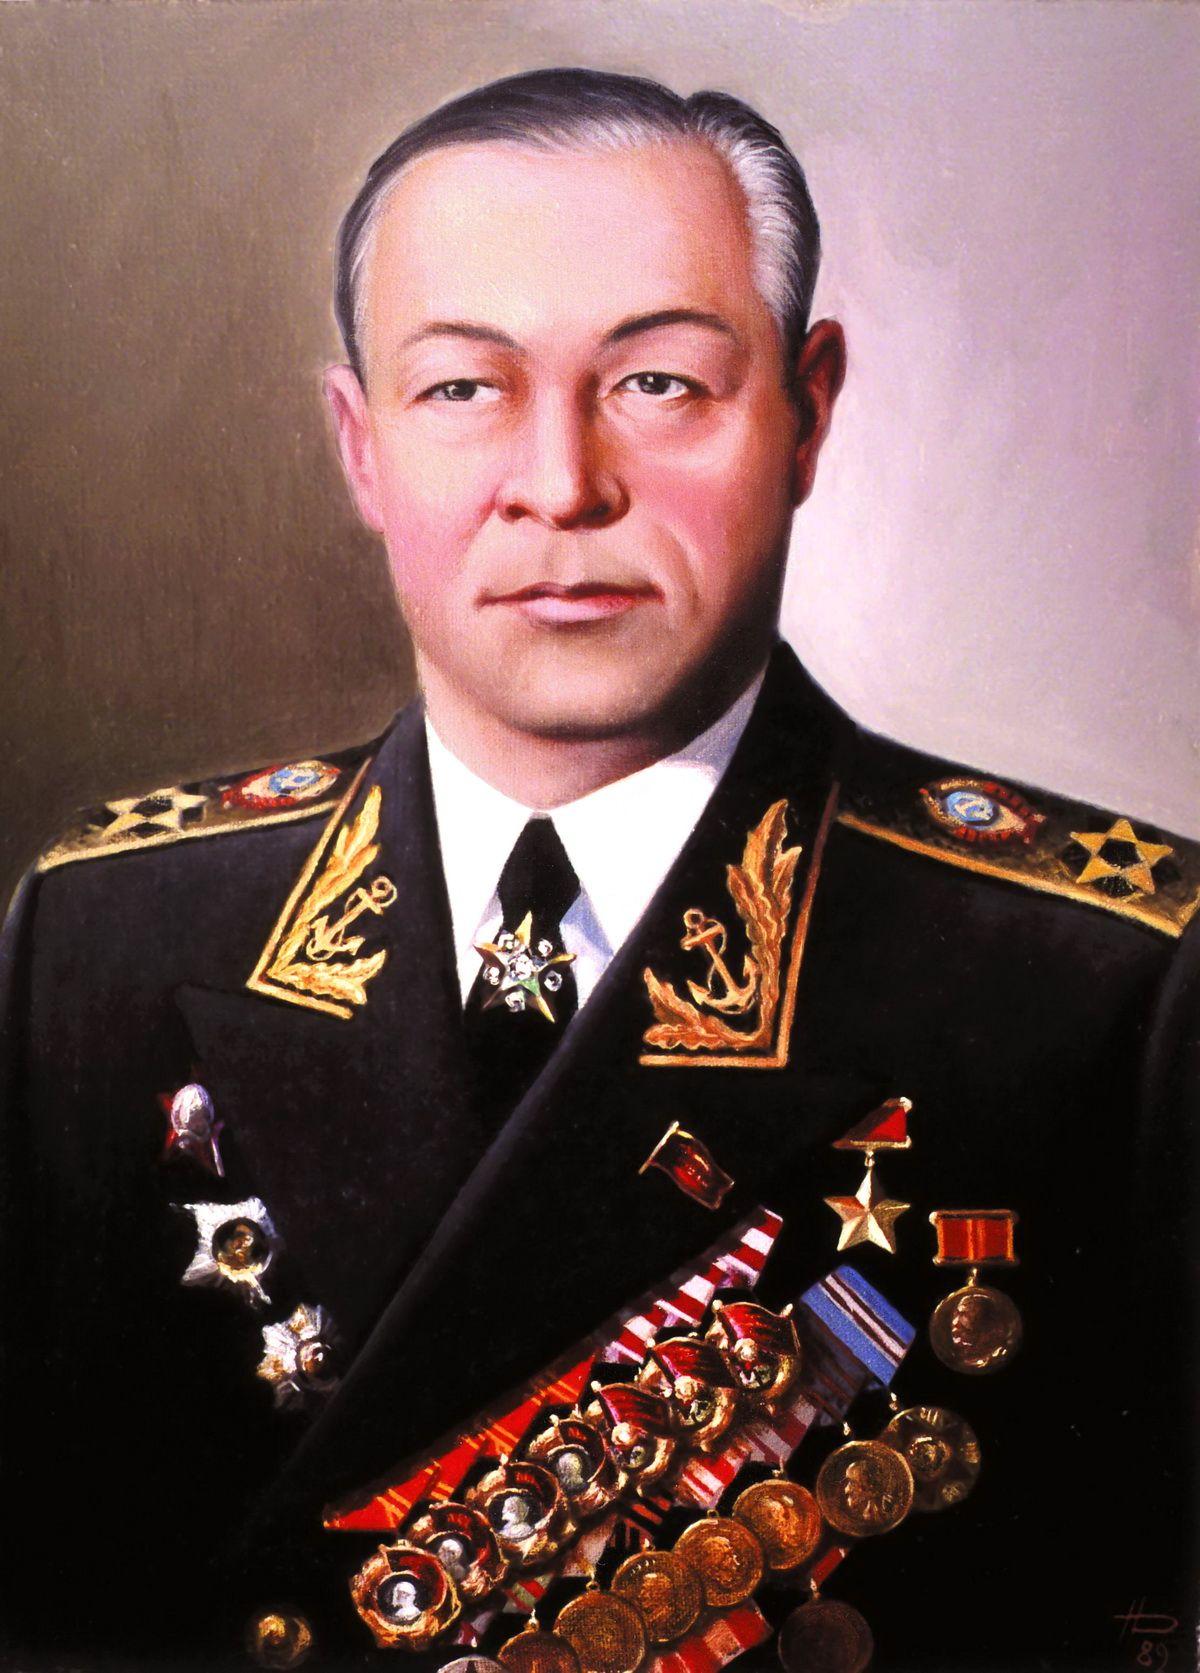 尼古拉·格拉西莫维奇·库兹涅佐夫(苏联海军元帅) 